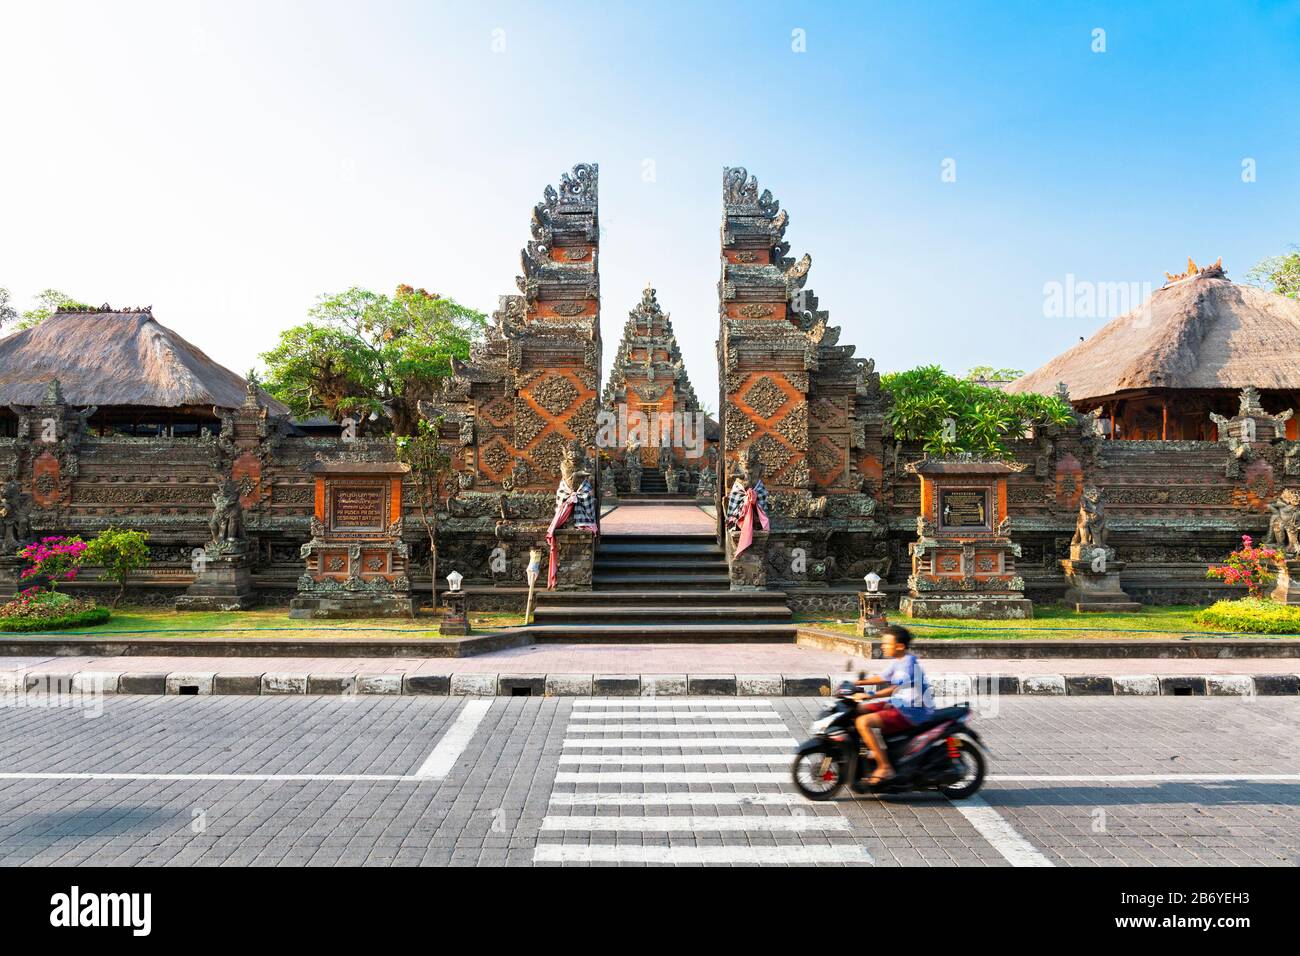 Indonesia, Bali, Sukawati, Batuan Village, Pura Puseh (Batuan Temple), Split Gateway (Candi Bentar) Stock Photo